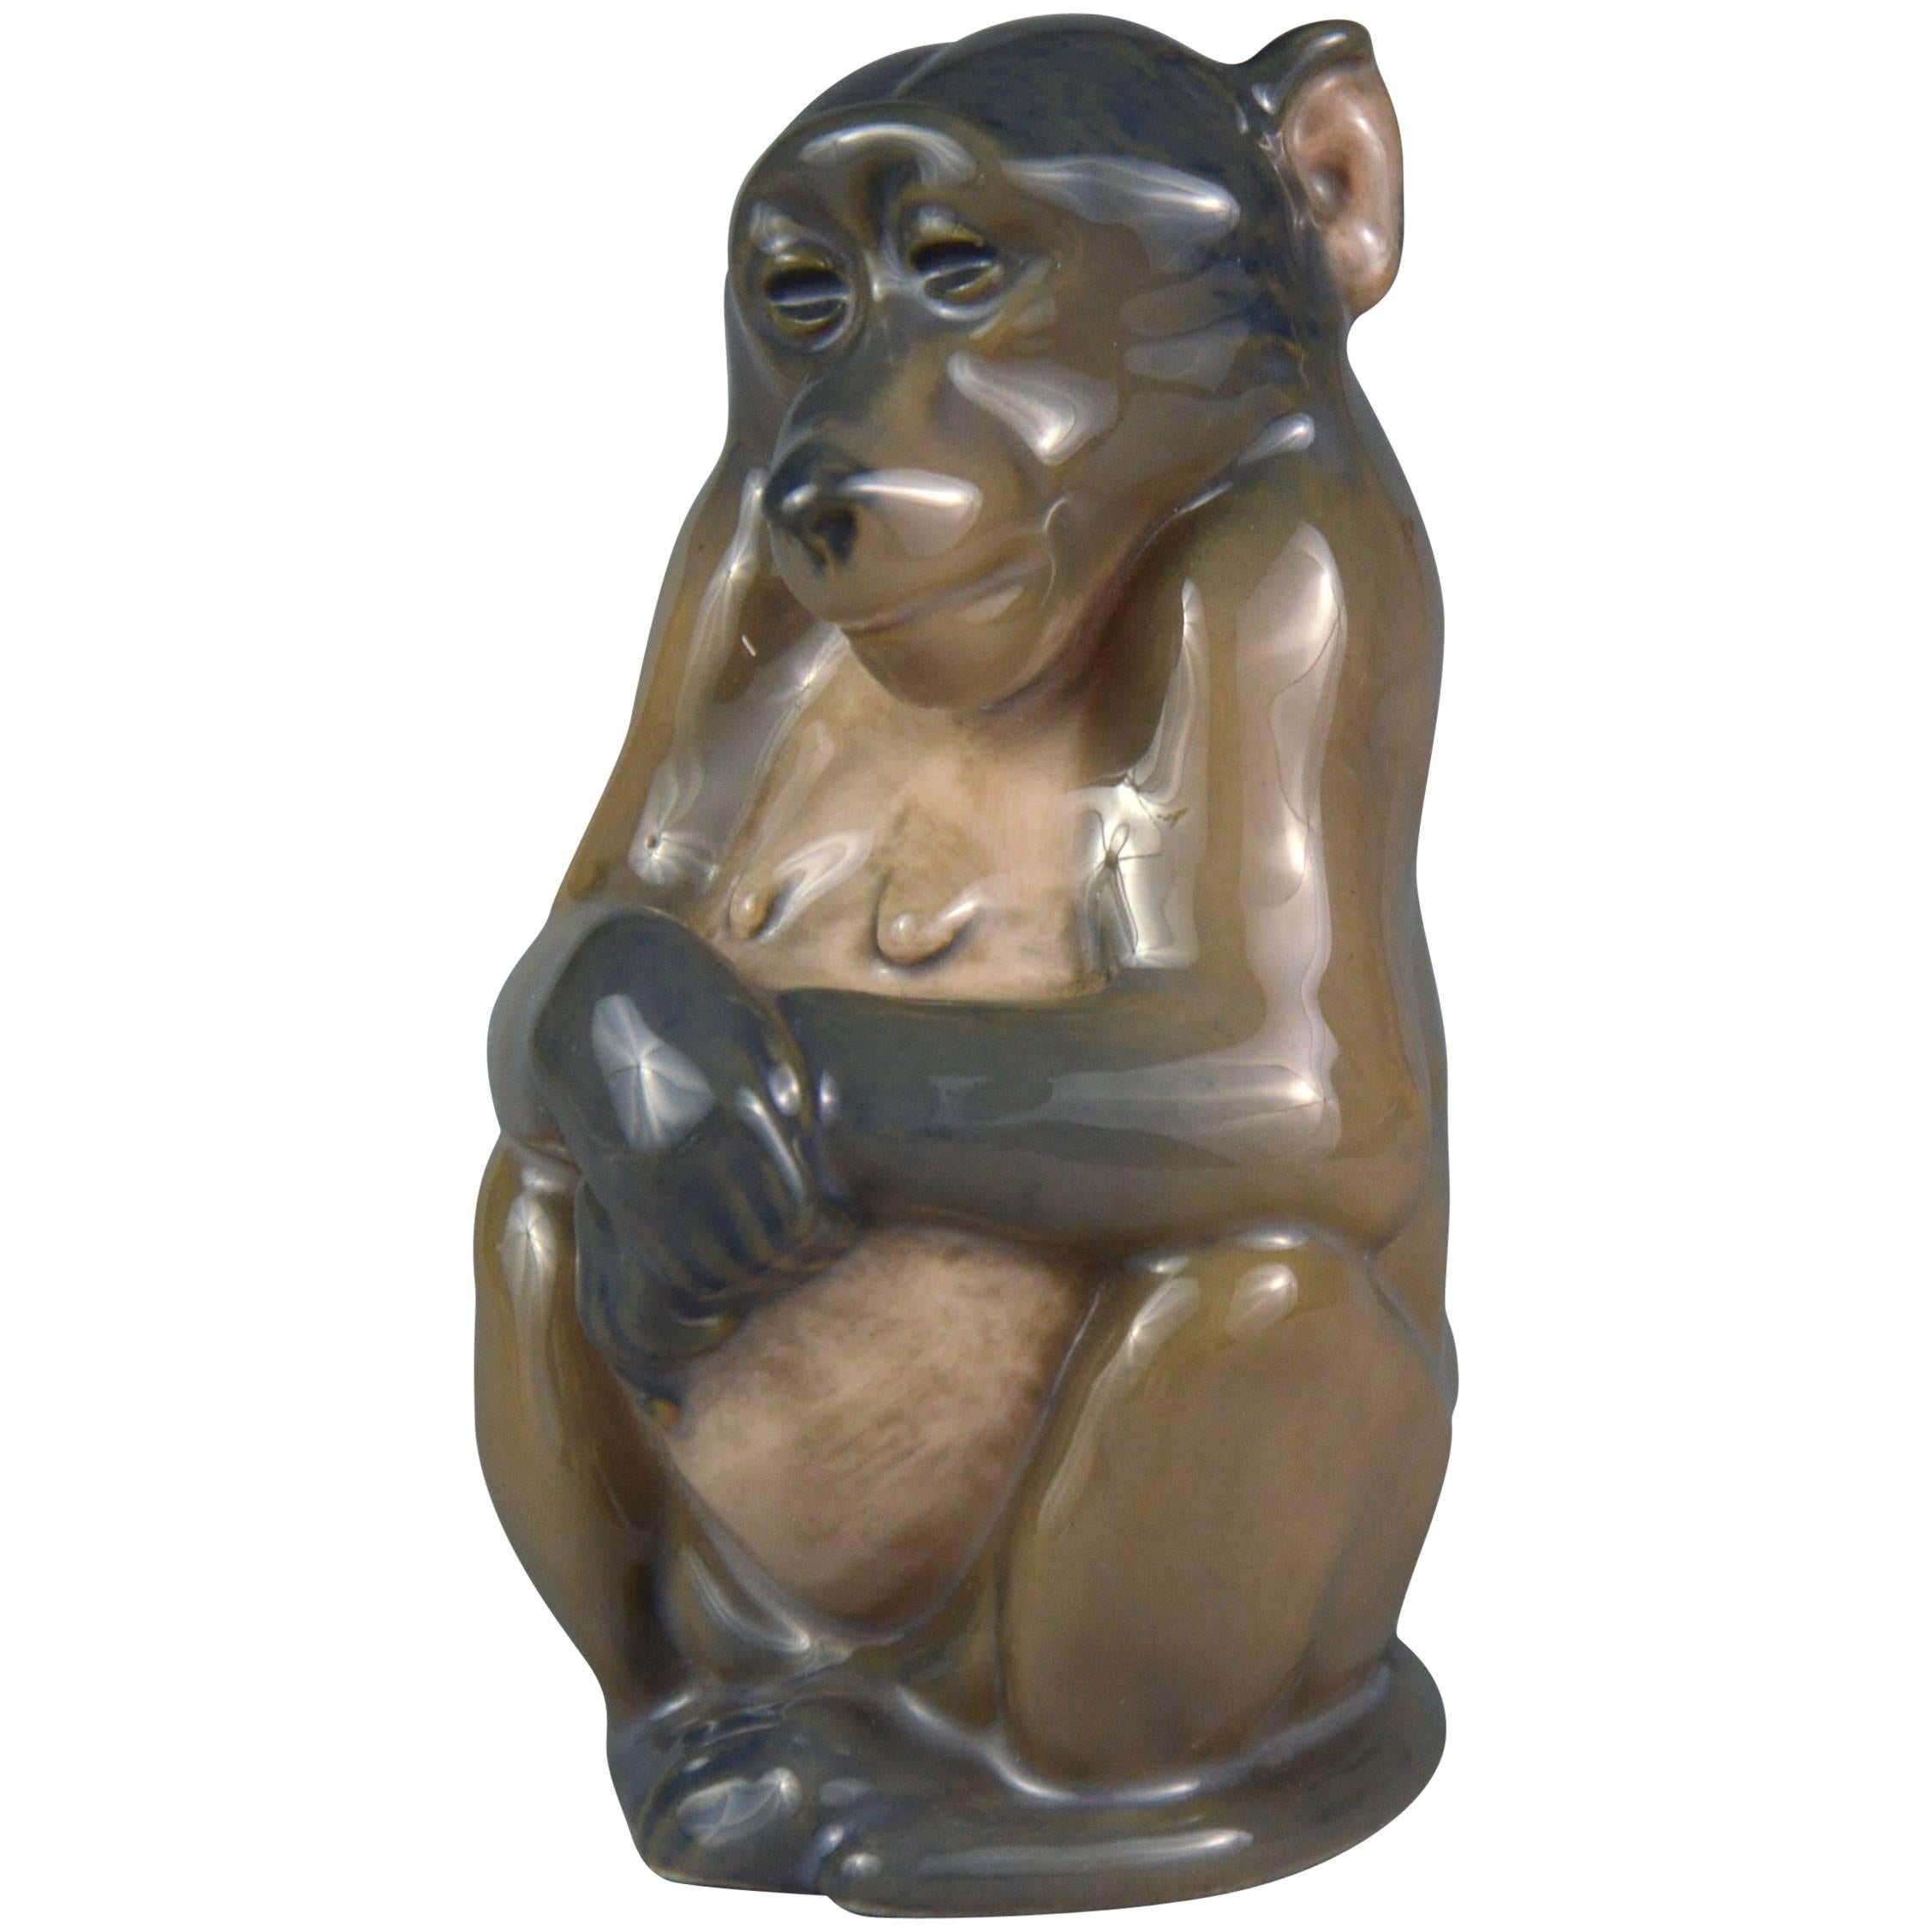 Royal Copenhagen Porcelain Figurine of a Sitting Monkey by Niels Nielsen, 1913